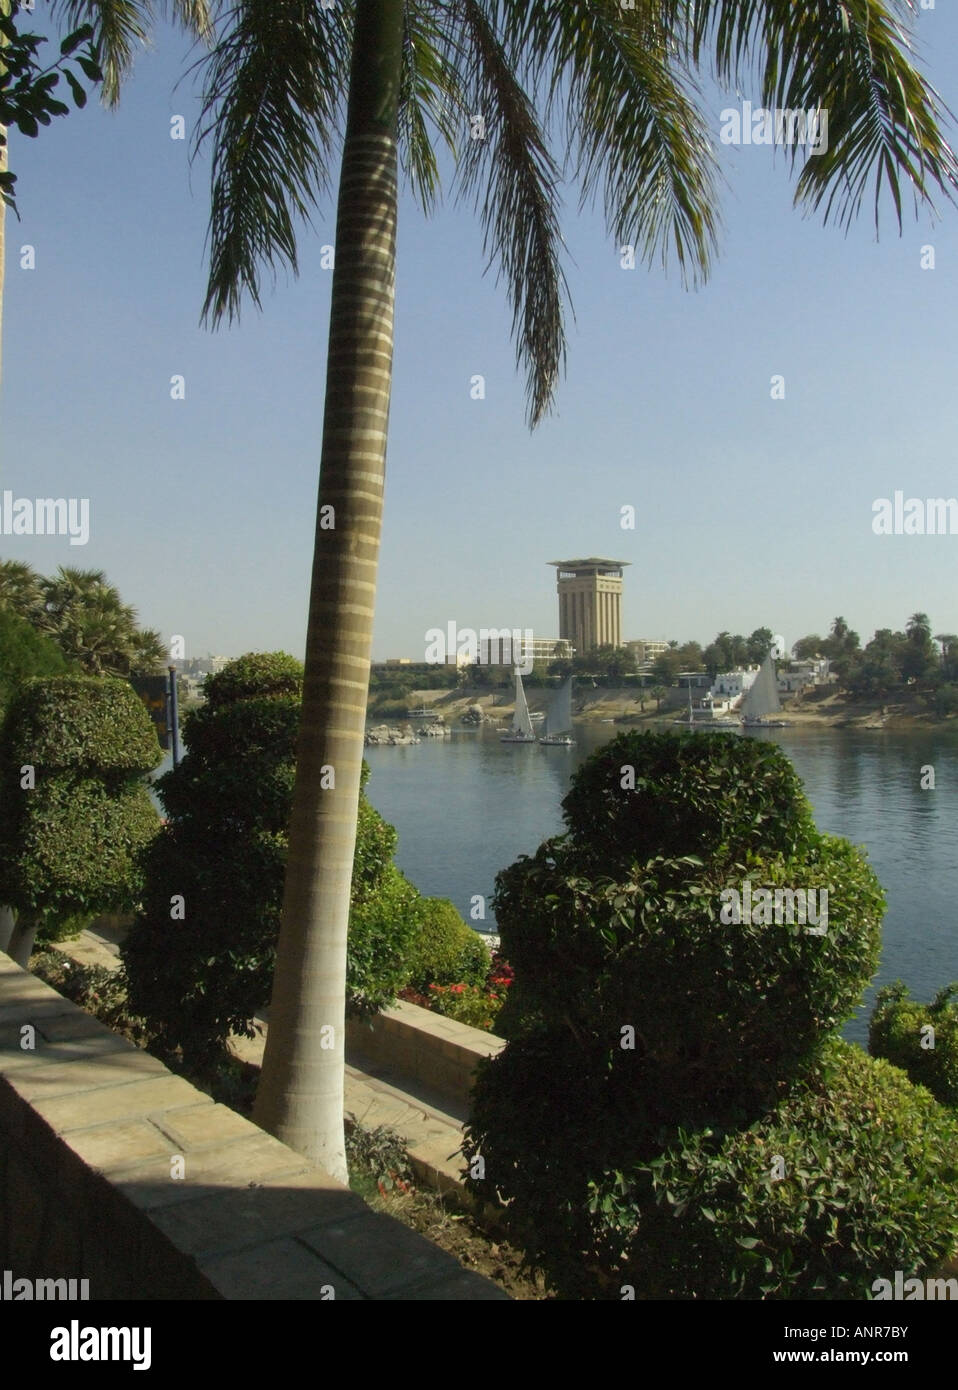 Aswan, Egypt, 'river scene'.palms green shrubs historical 'tranquill scene' Stock Photo